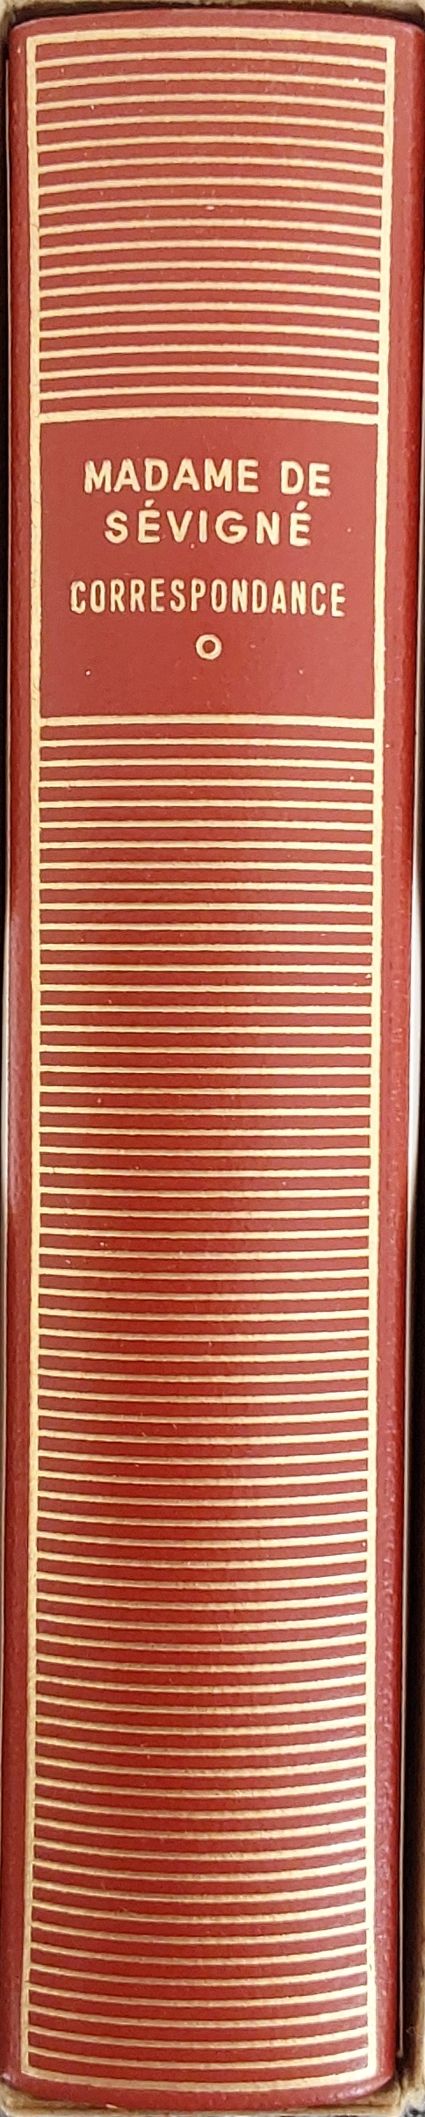 Volume 97 de Madame de Sévigné dans la bibliothèque de la Pléiade.